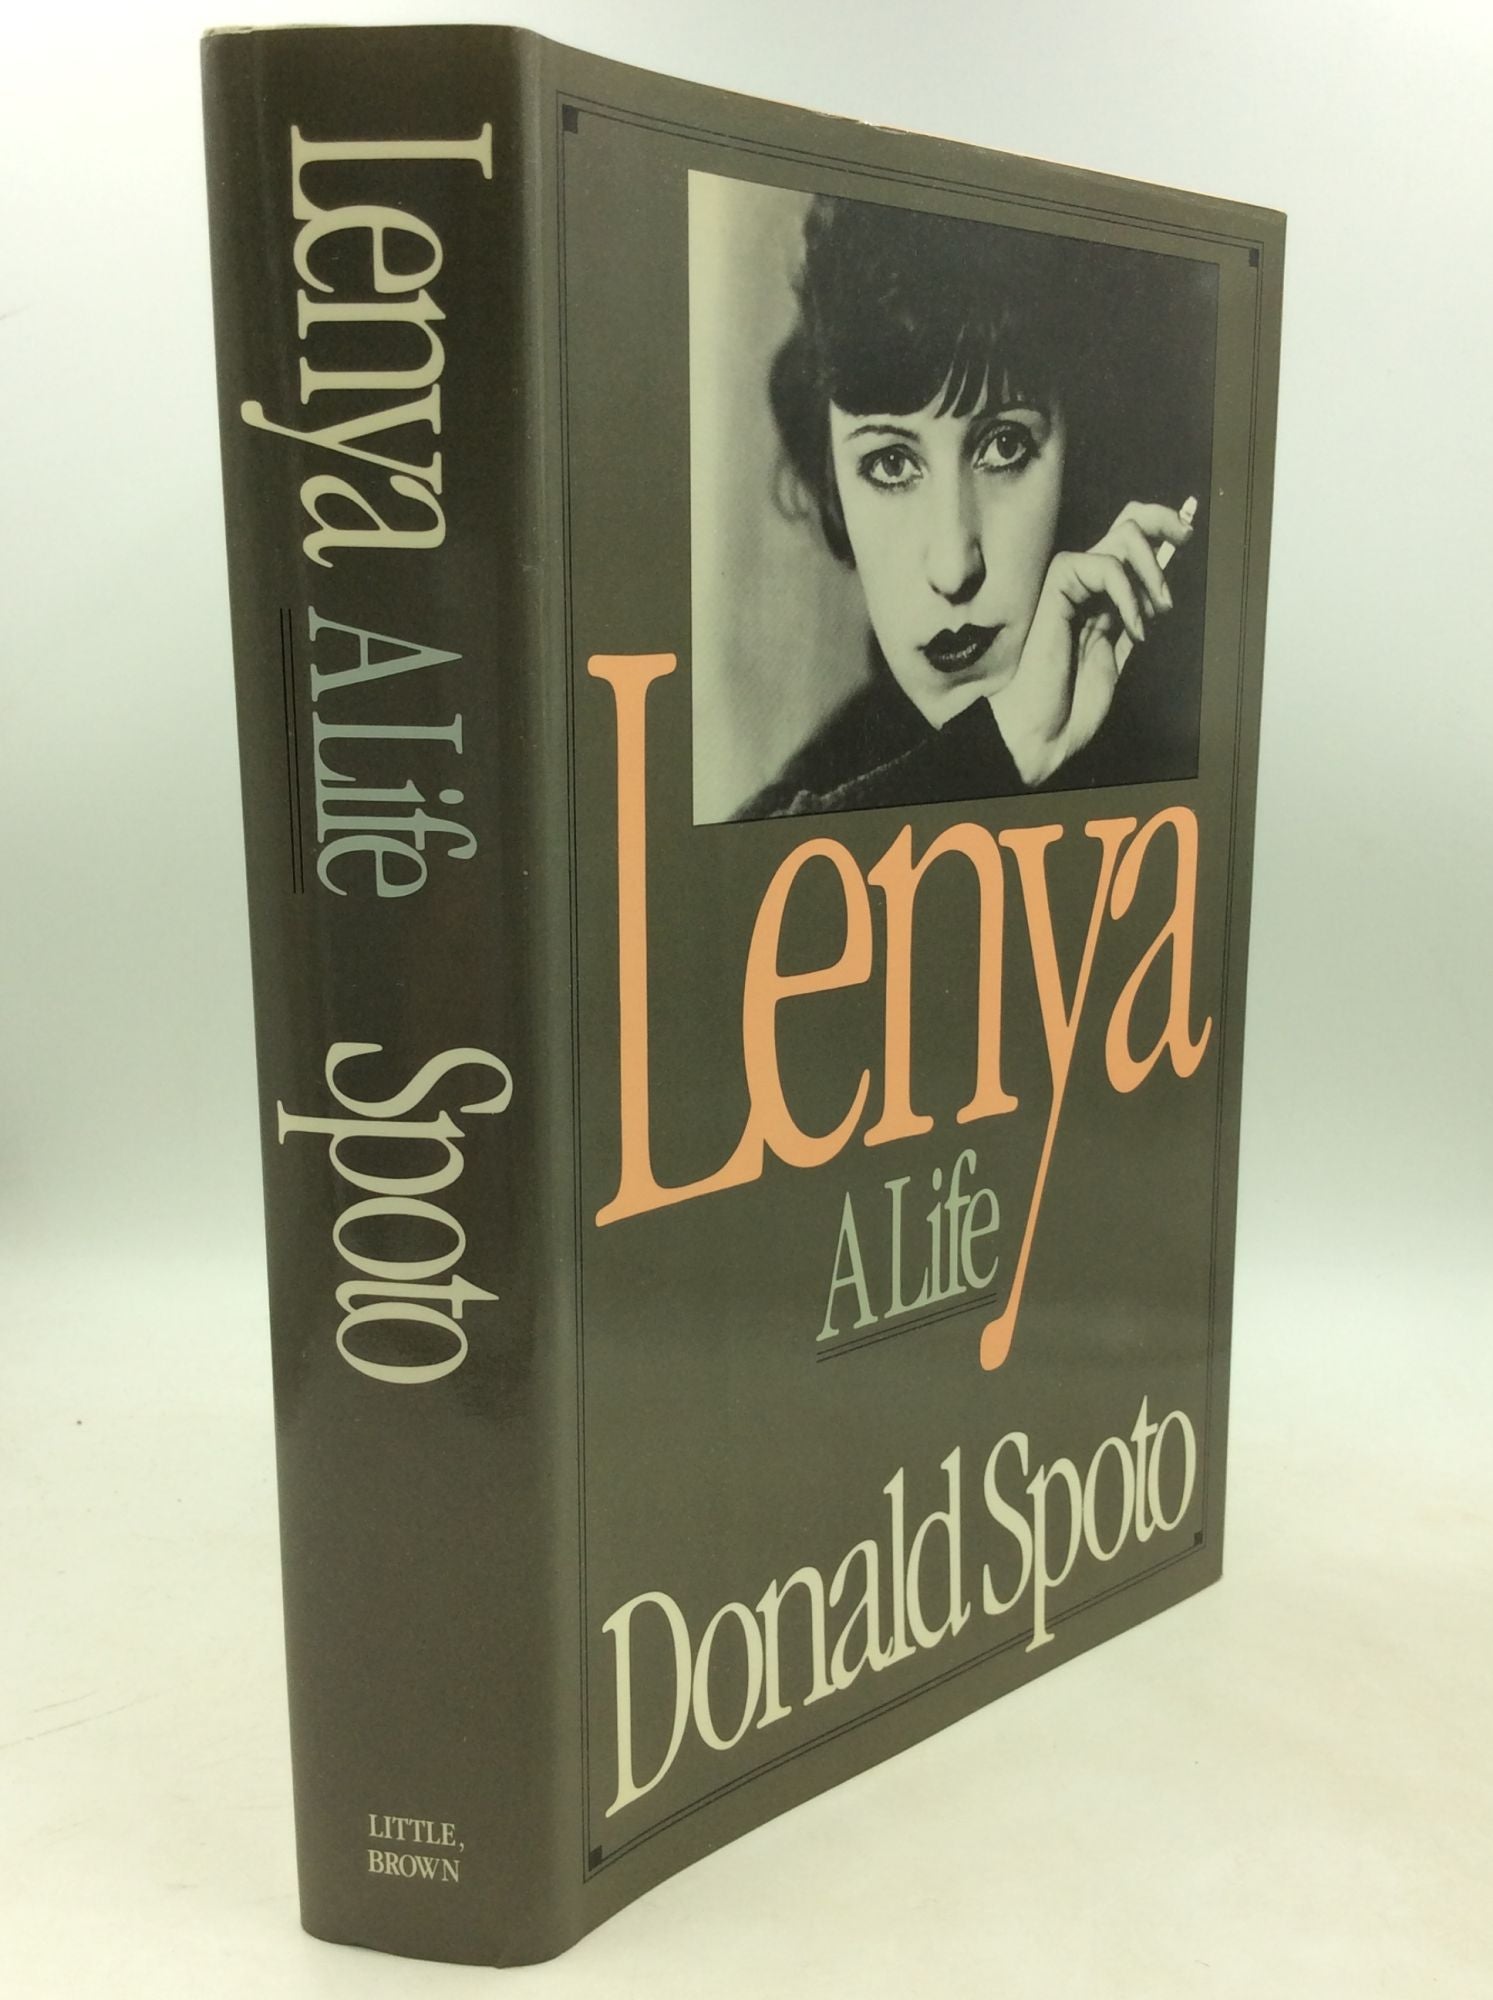 Donald Spoto - Lenya: A Life